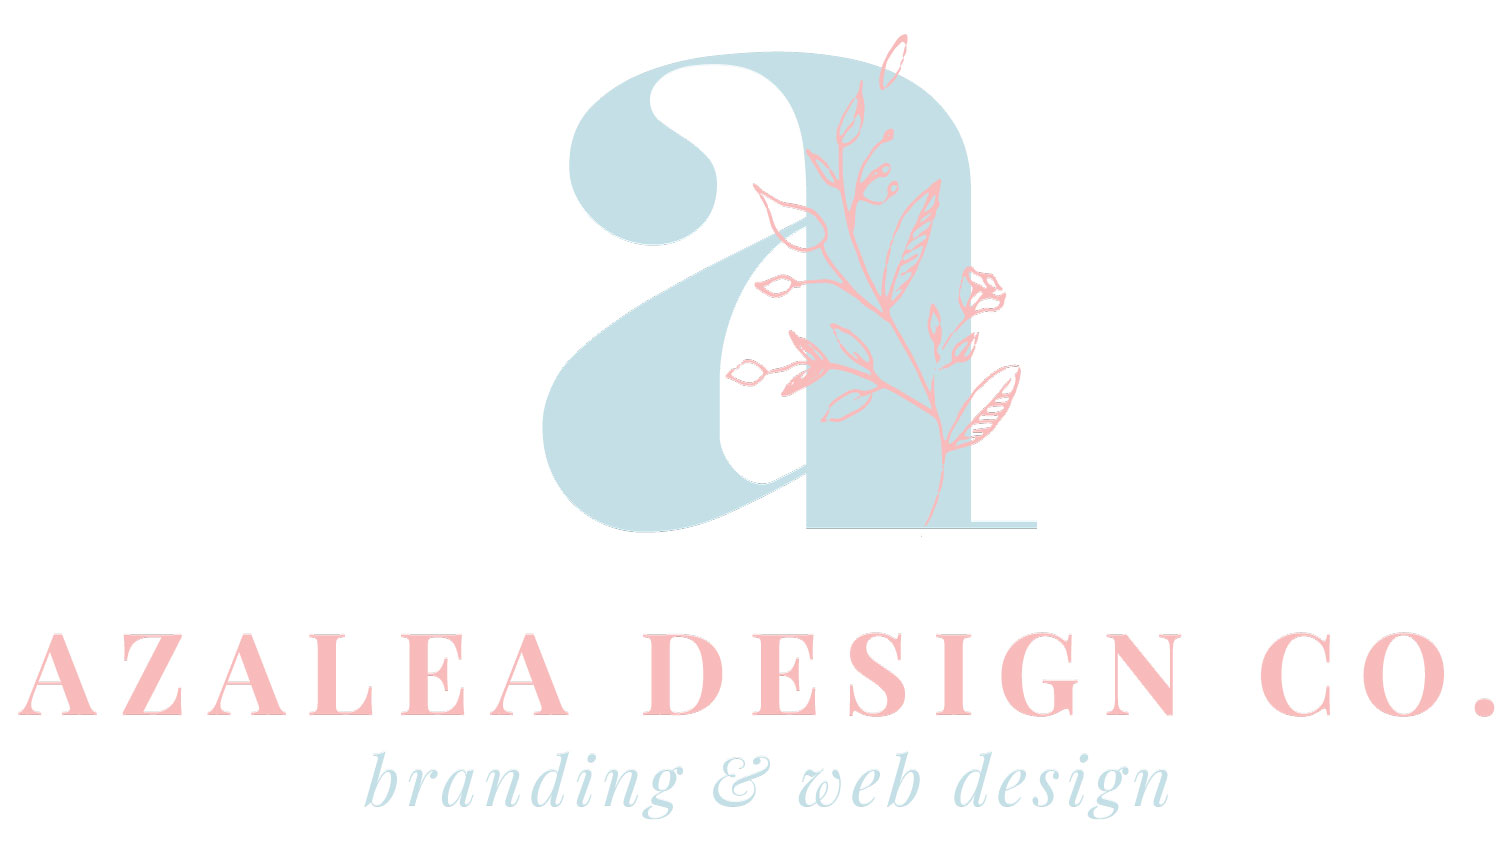 Azalea Design Co.'s primary logo